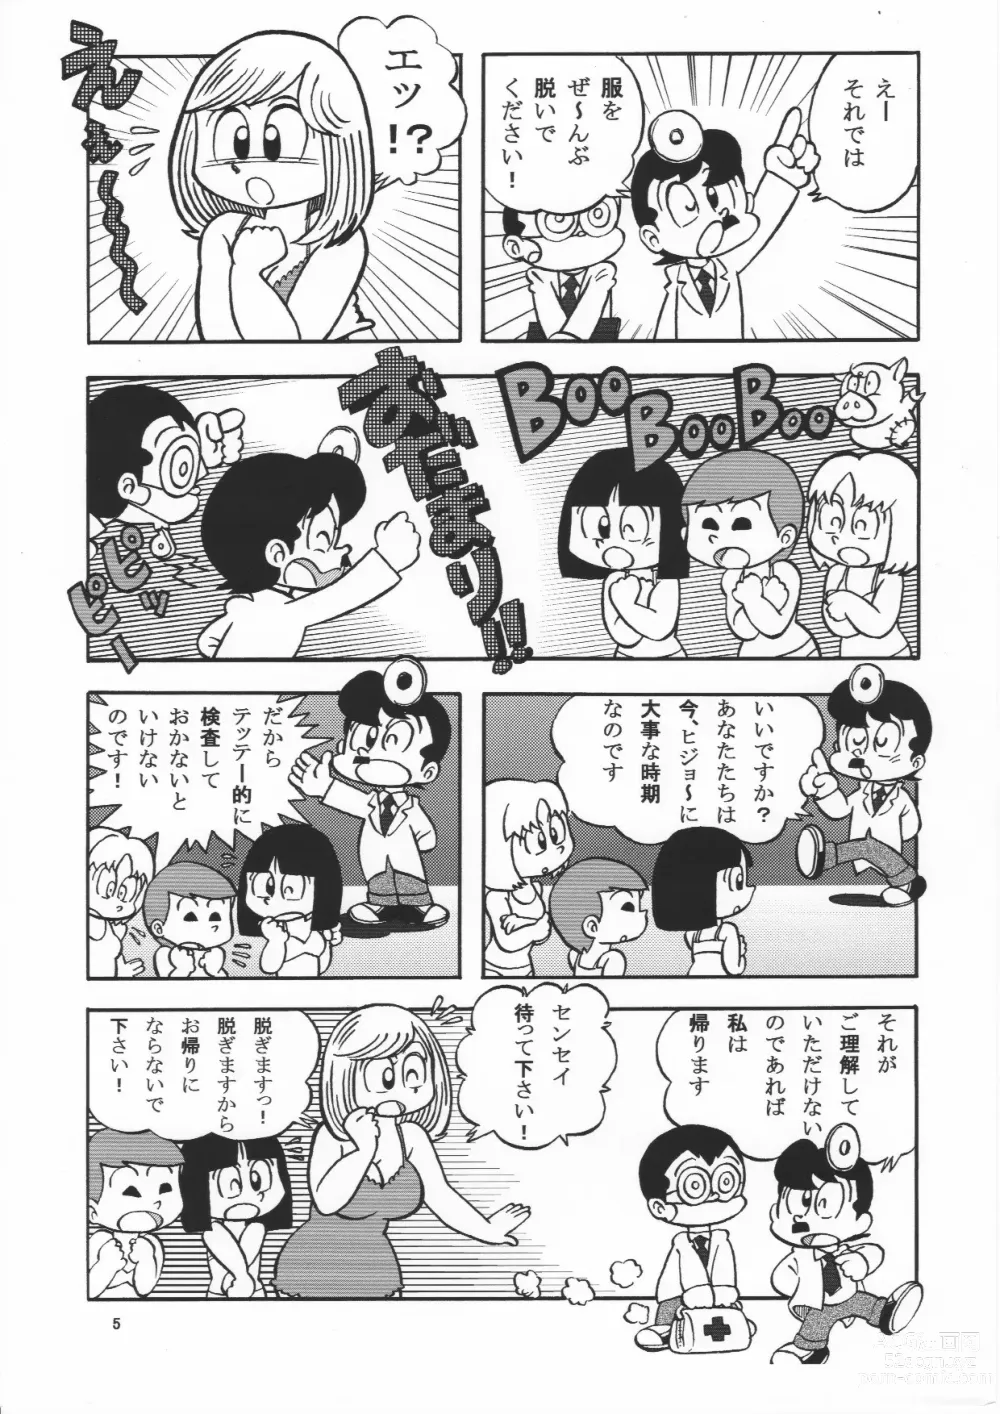 Page 5 of doujinshi (Maicching Machiko Sensei)